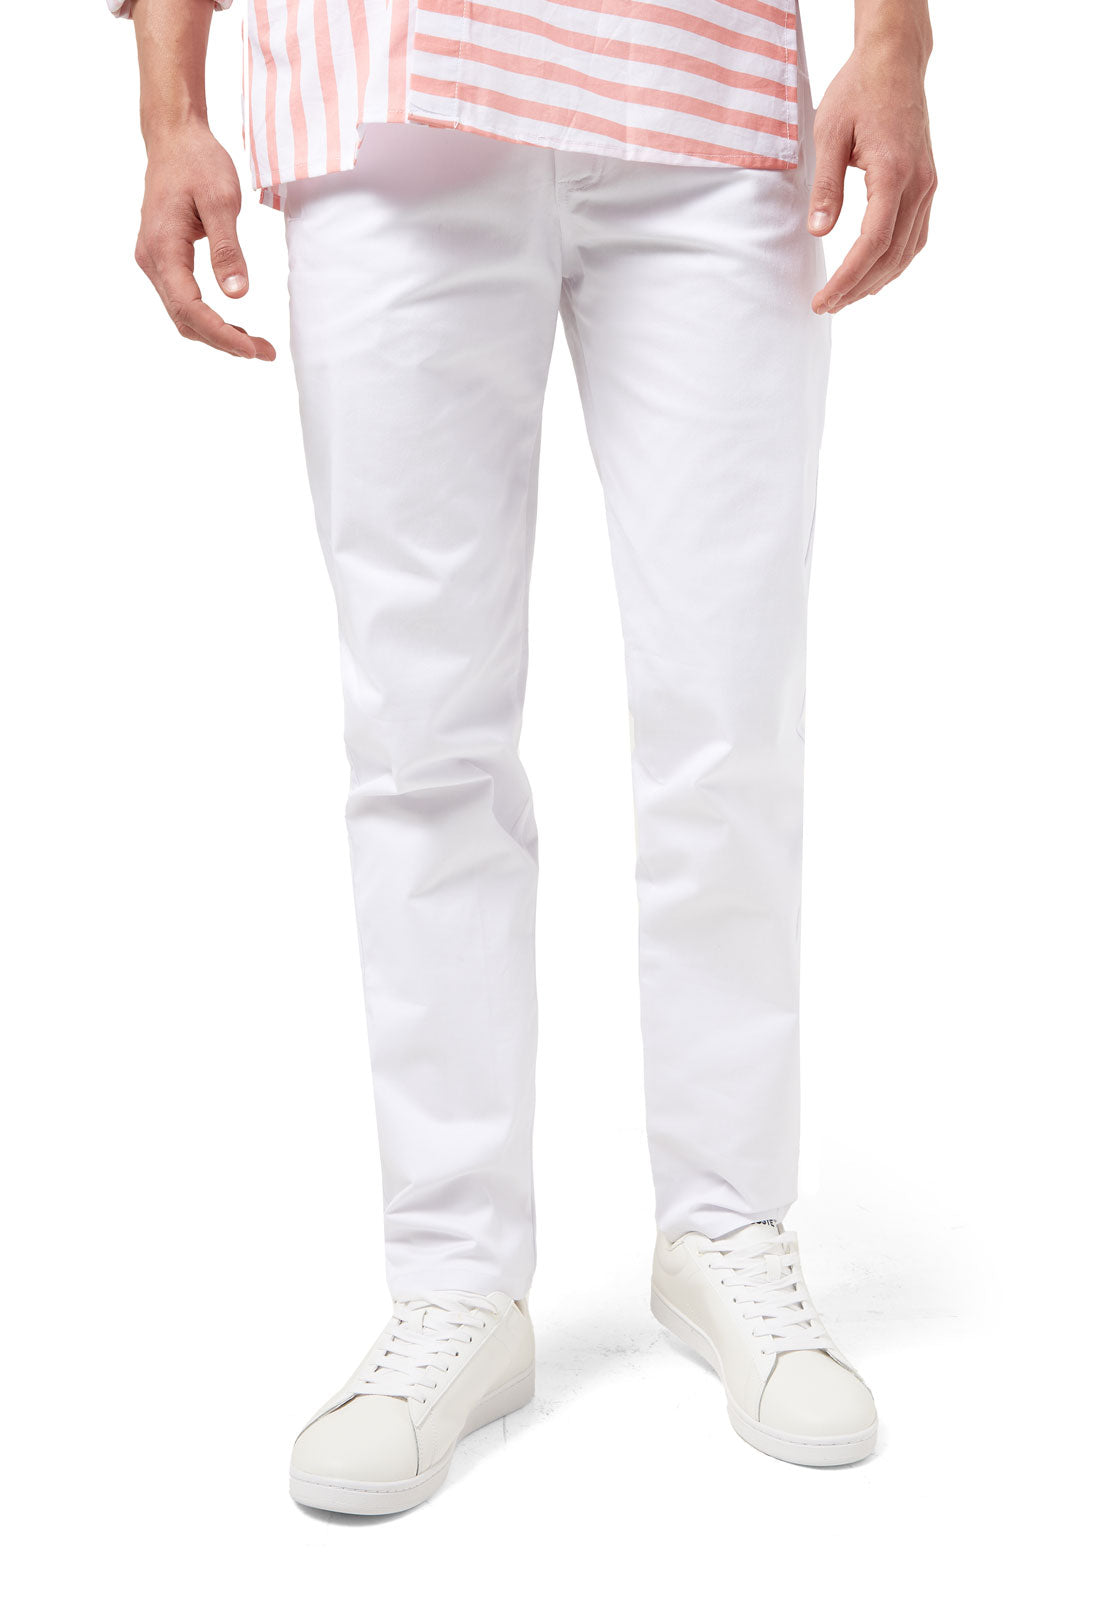 Pantalon blanco 